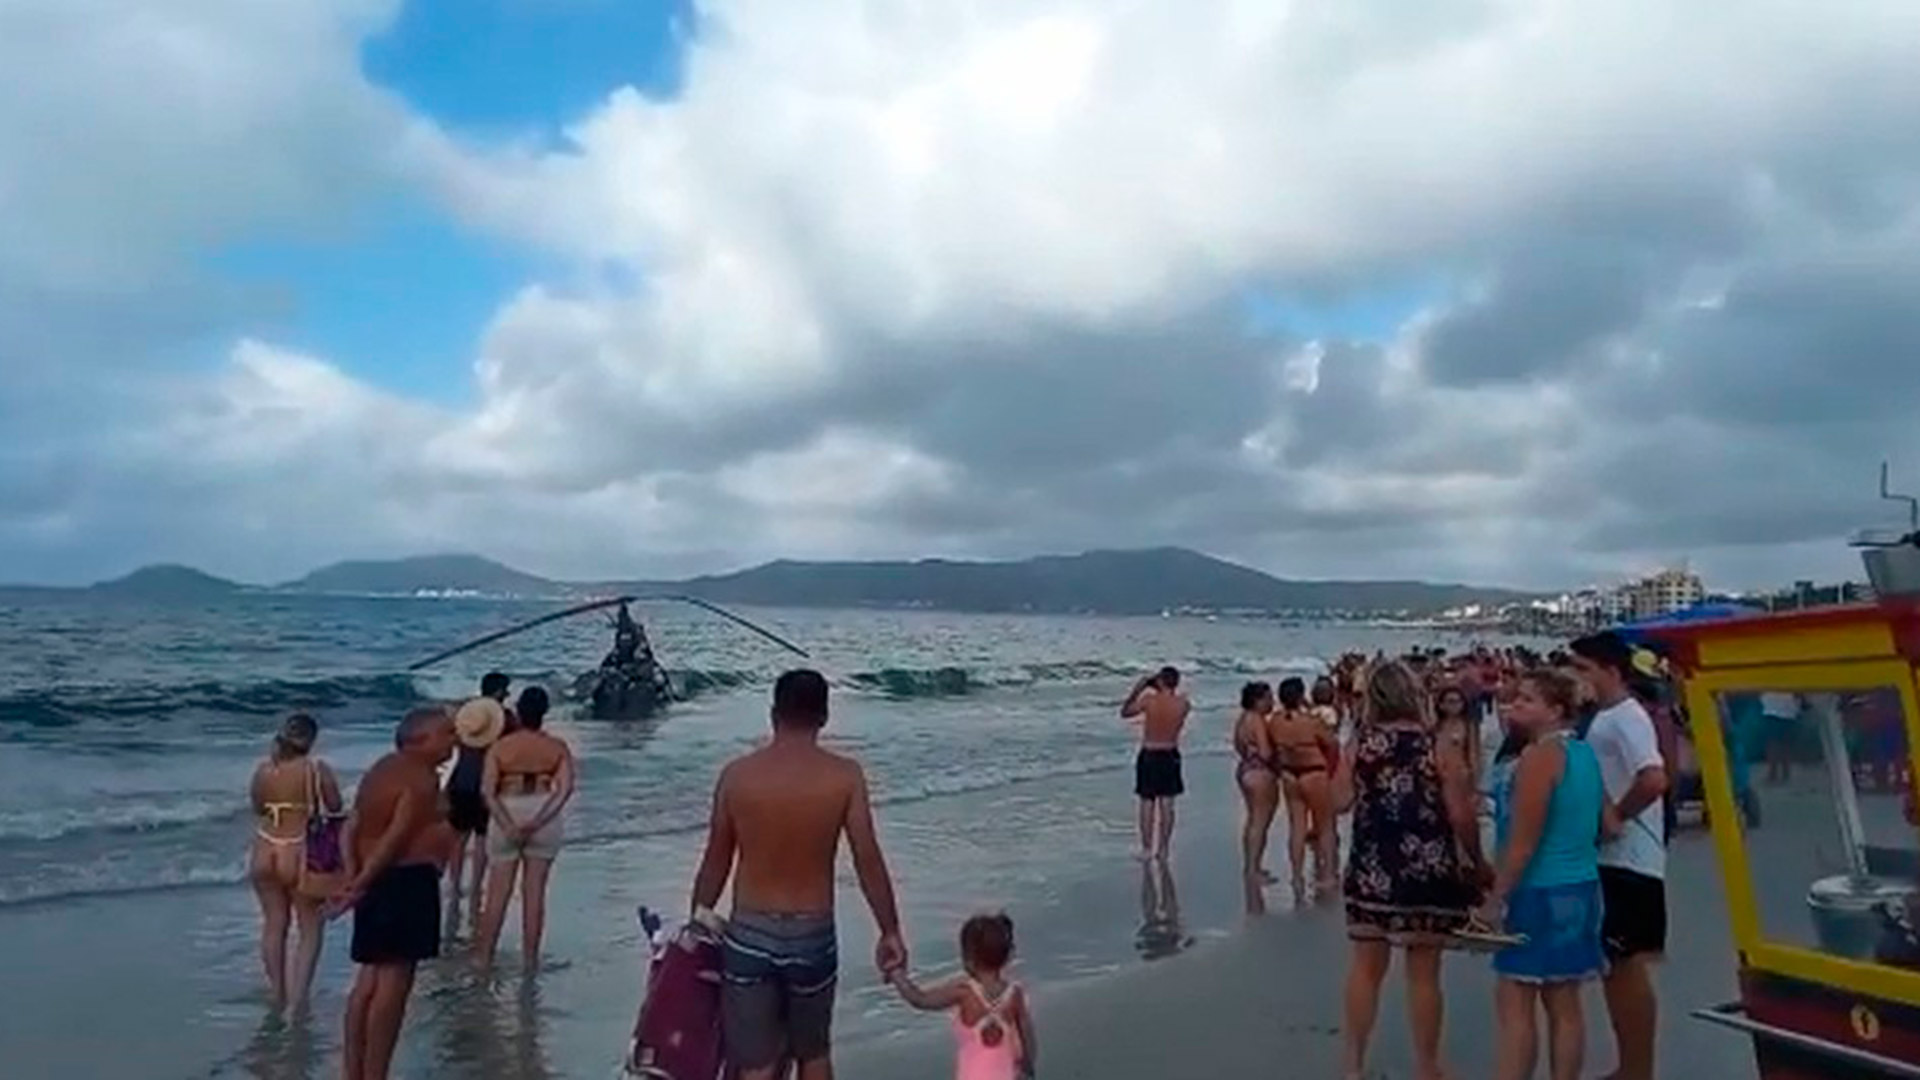 El accidente se produjo en una playa de Canasvieiras, en Florianópolis (G1)